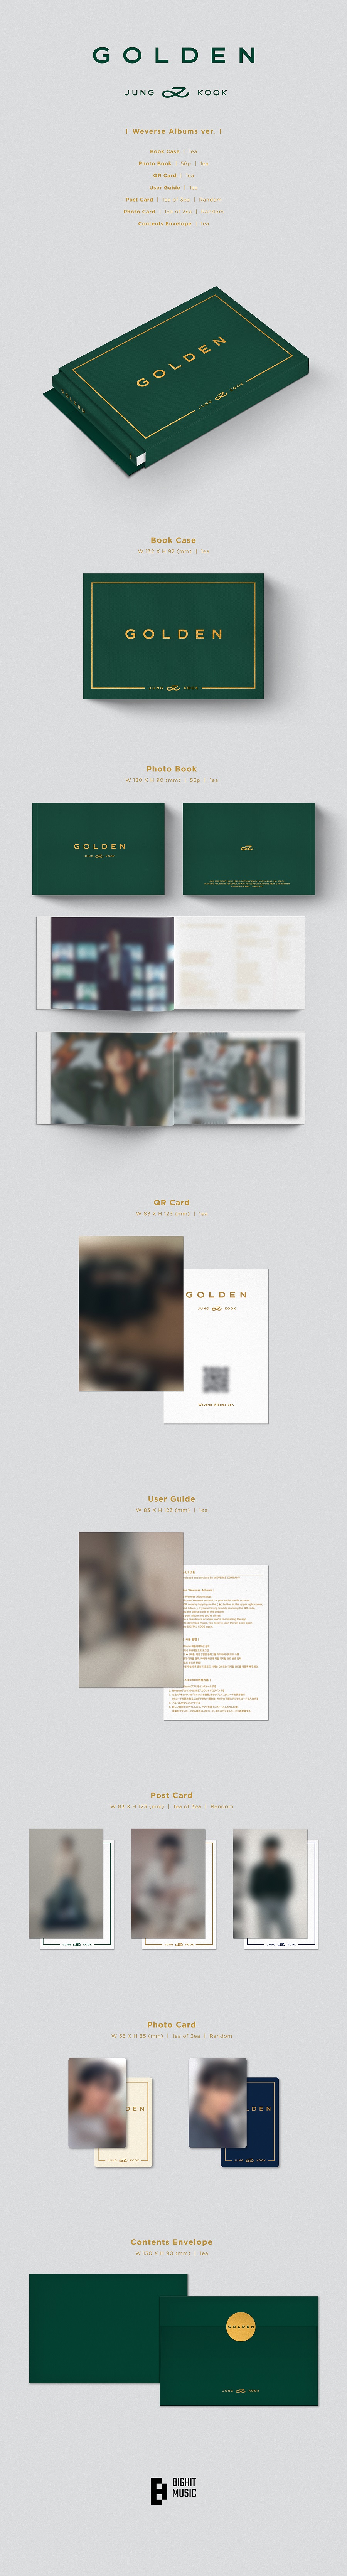 정국 - GOLDEN (Weverse Albums ver.)